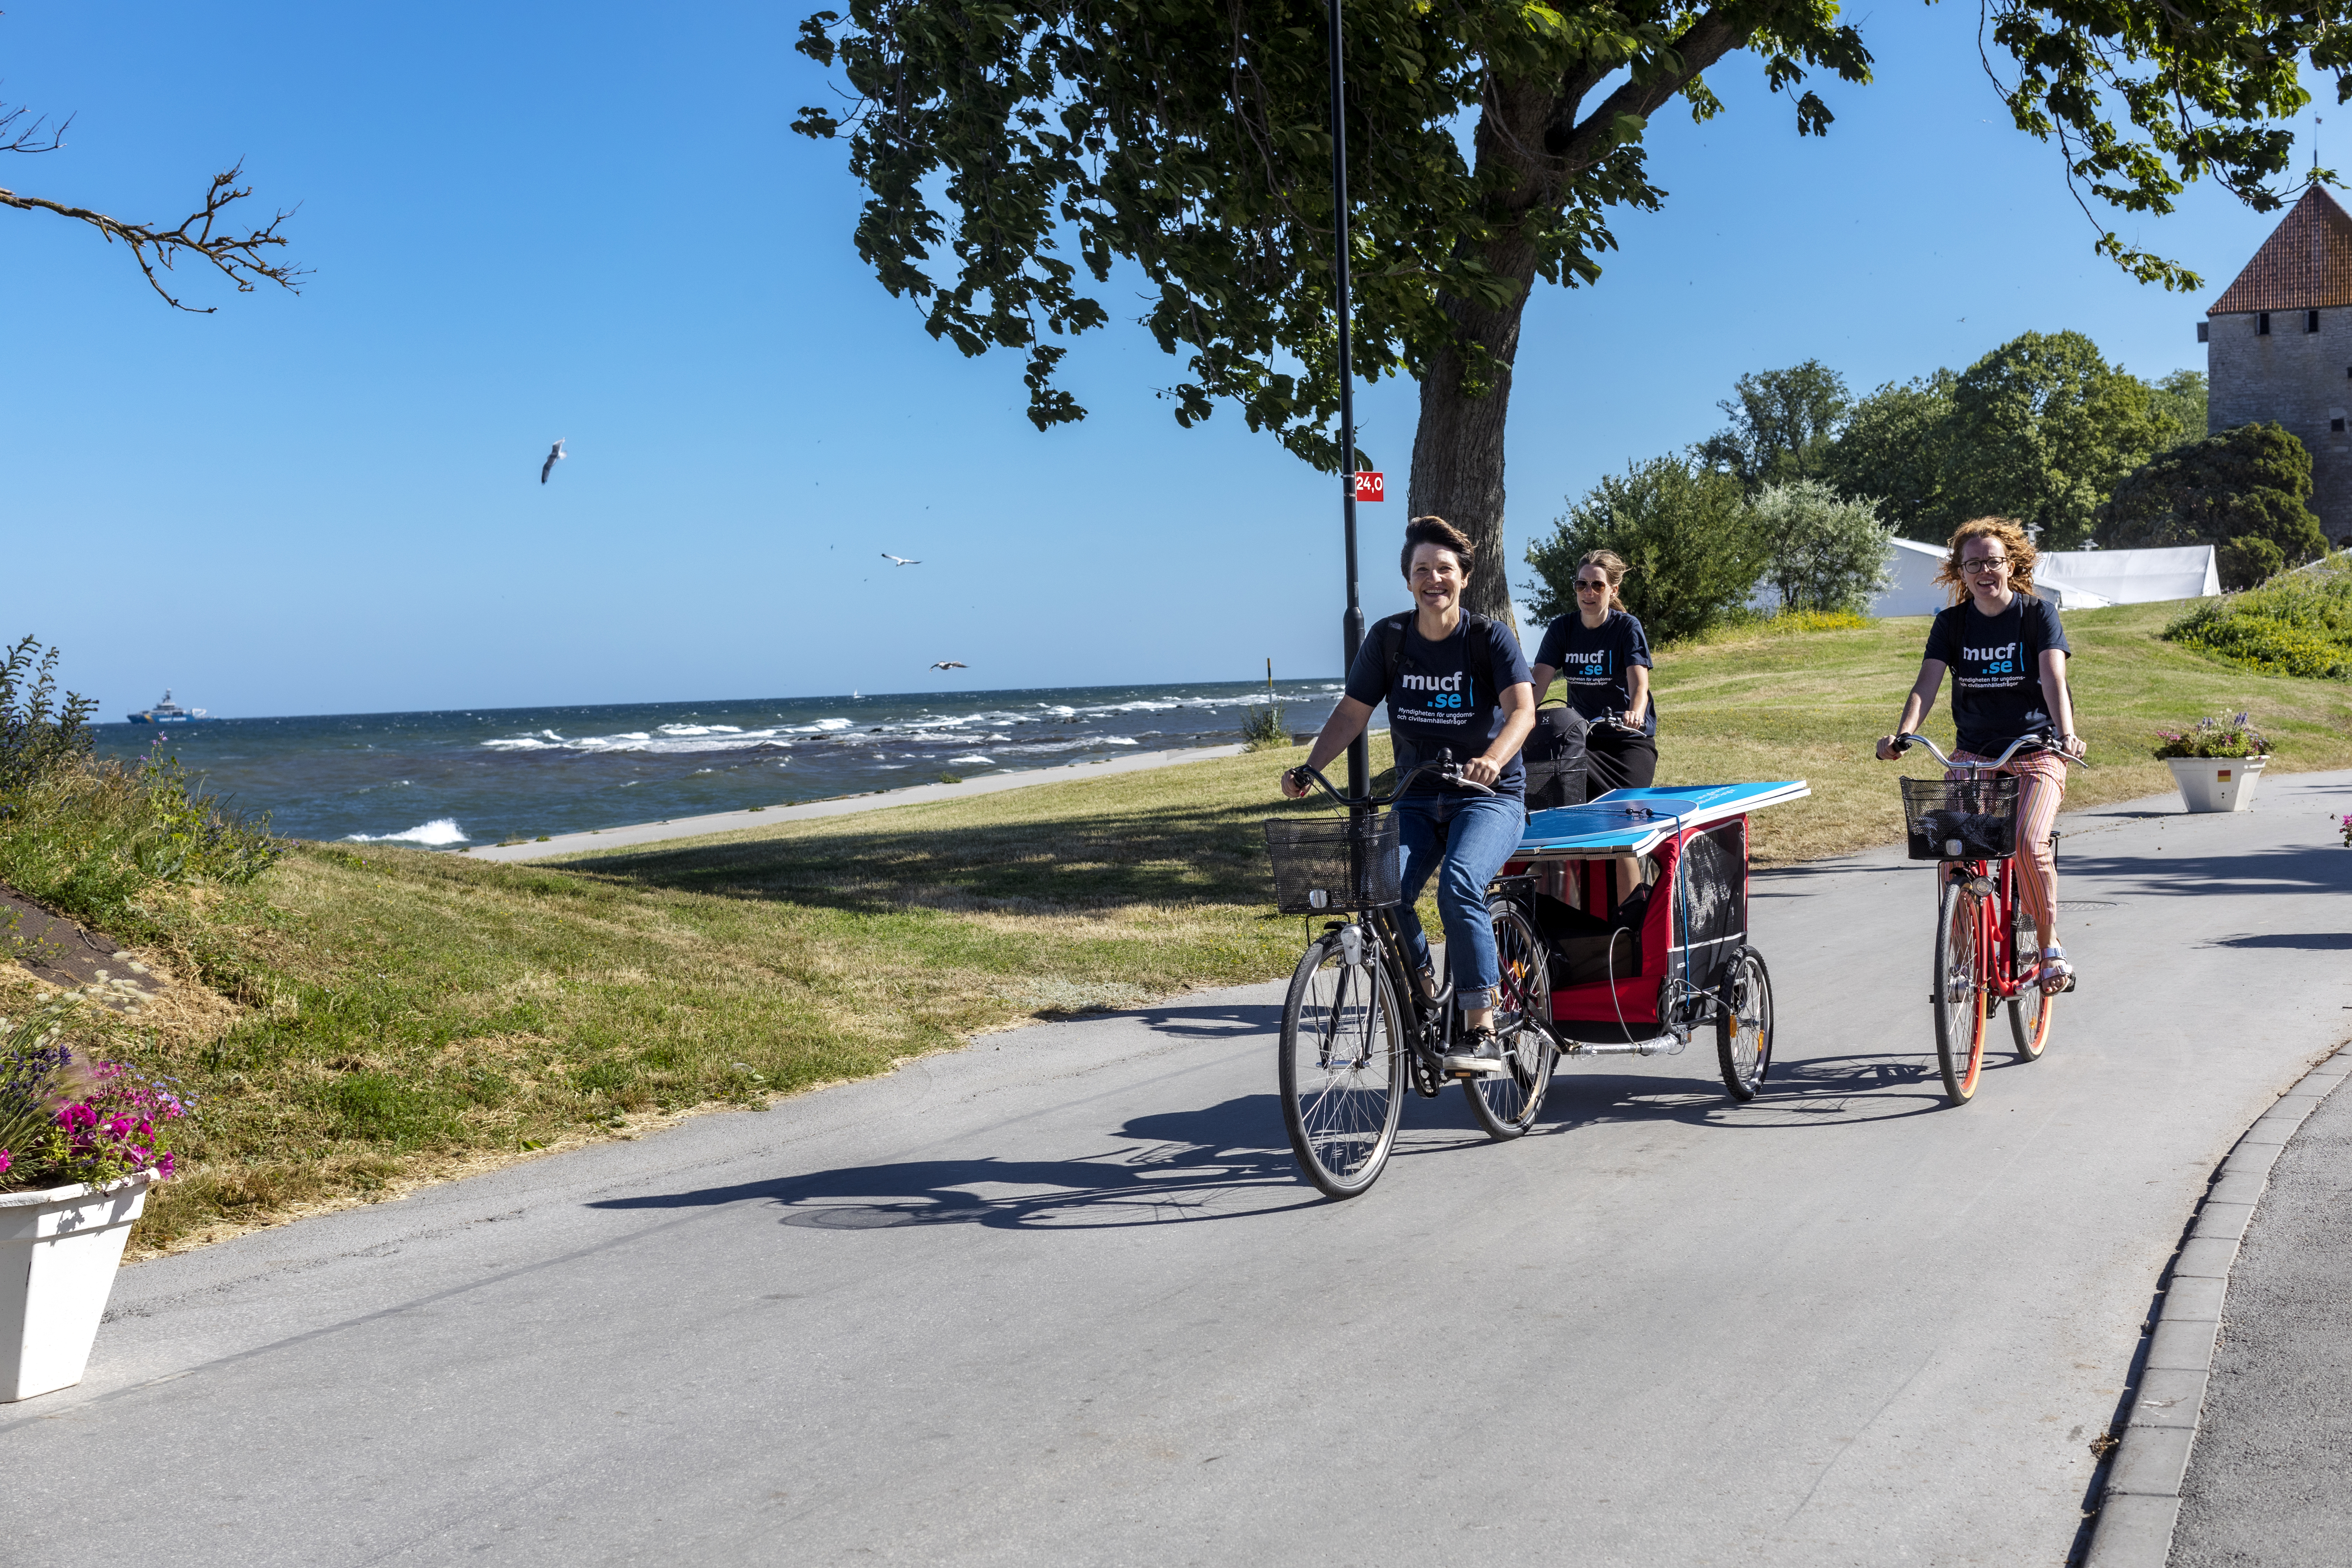 Karin Hellström, Malin Persson och Sara Selander fraktar MUCFs material från den hyrda villan till seminarielokalen med hjälp av cykelkärror. 